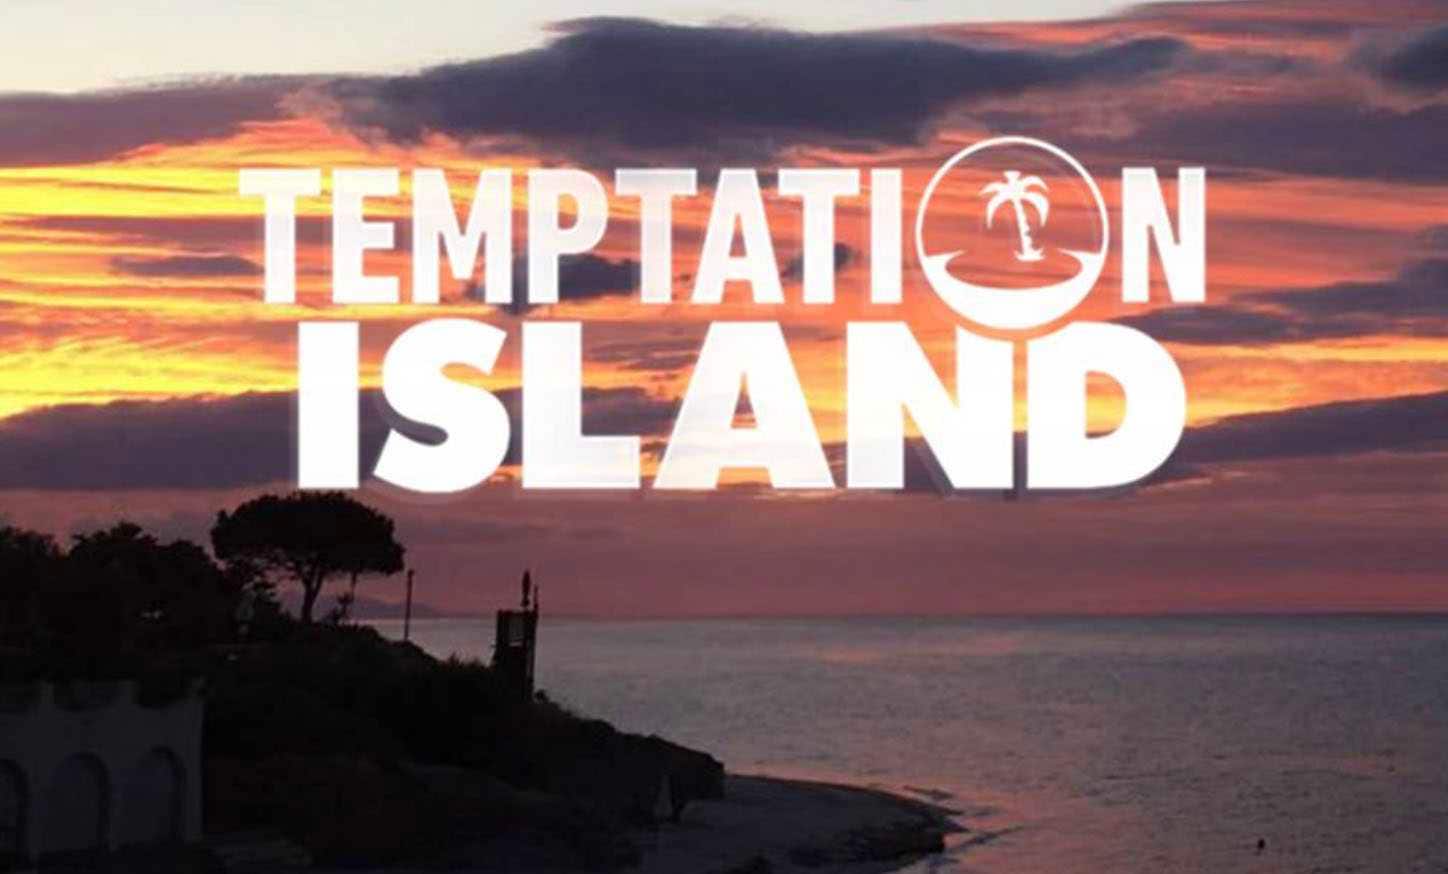 Temptation Island, chiacchieratissima coppia in dolce attesa, l’indiscrezione